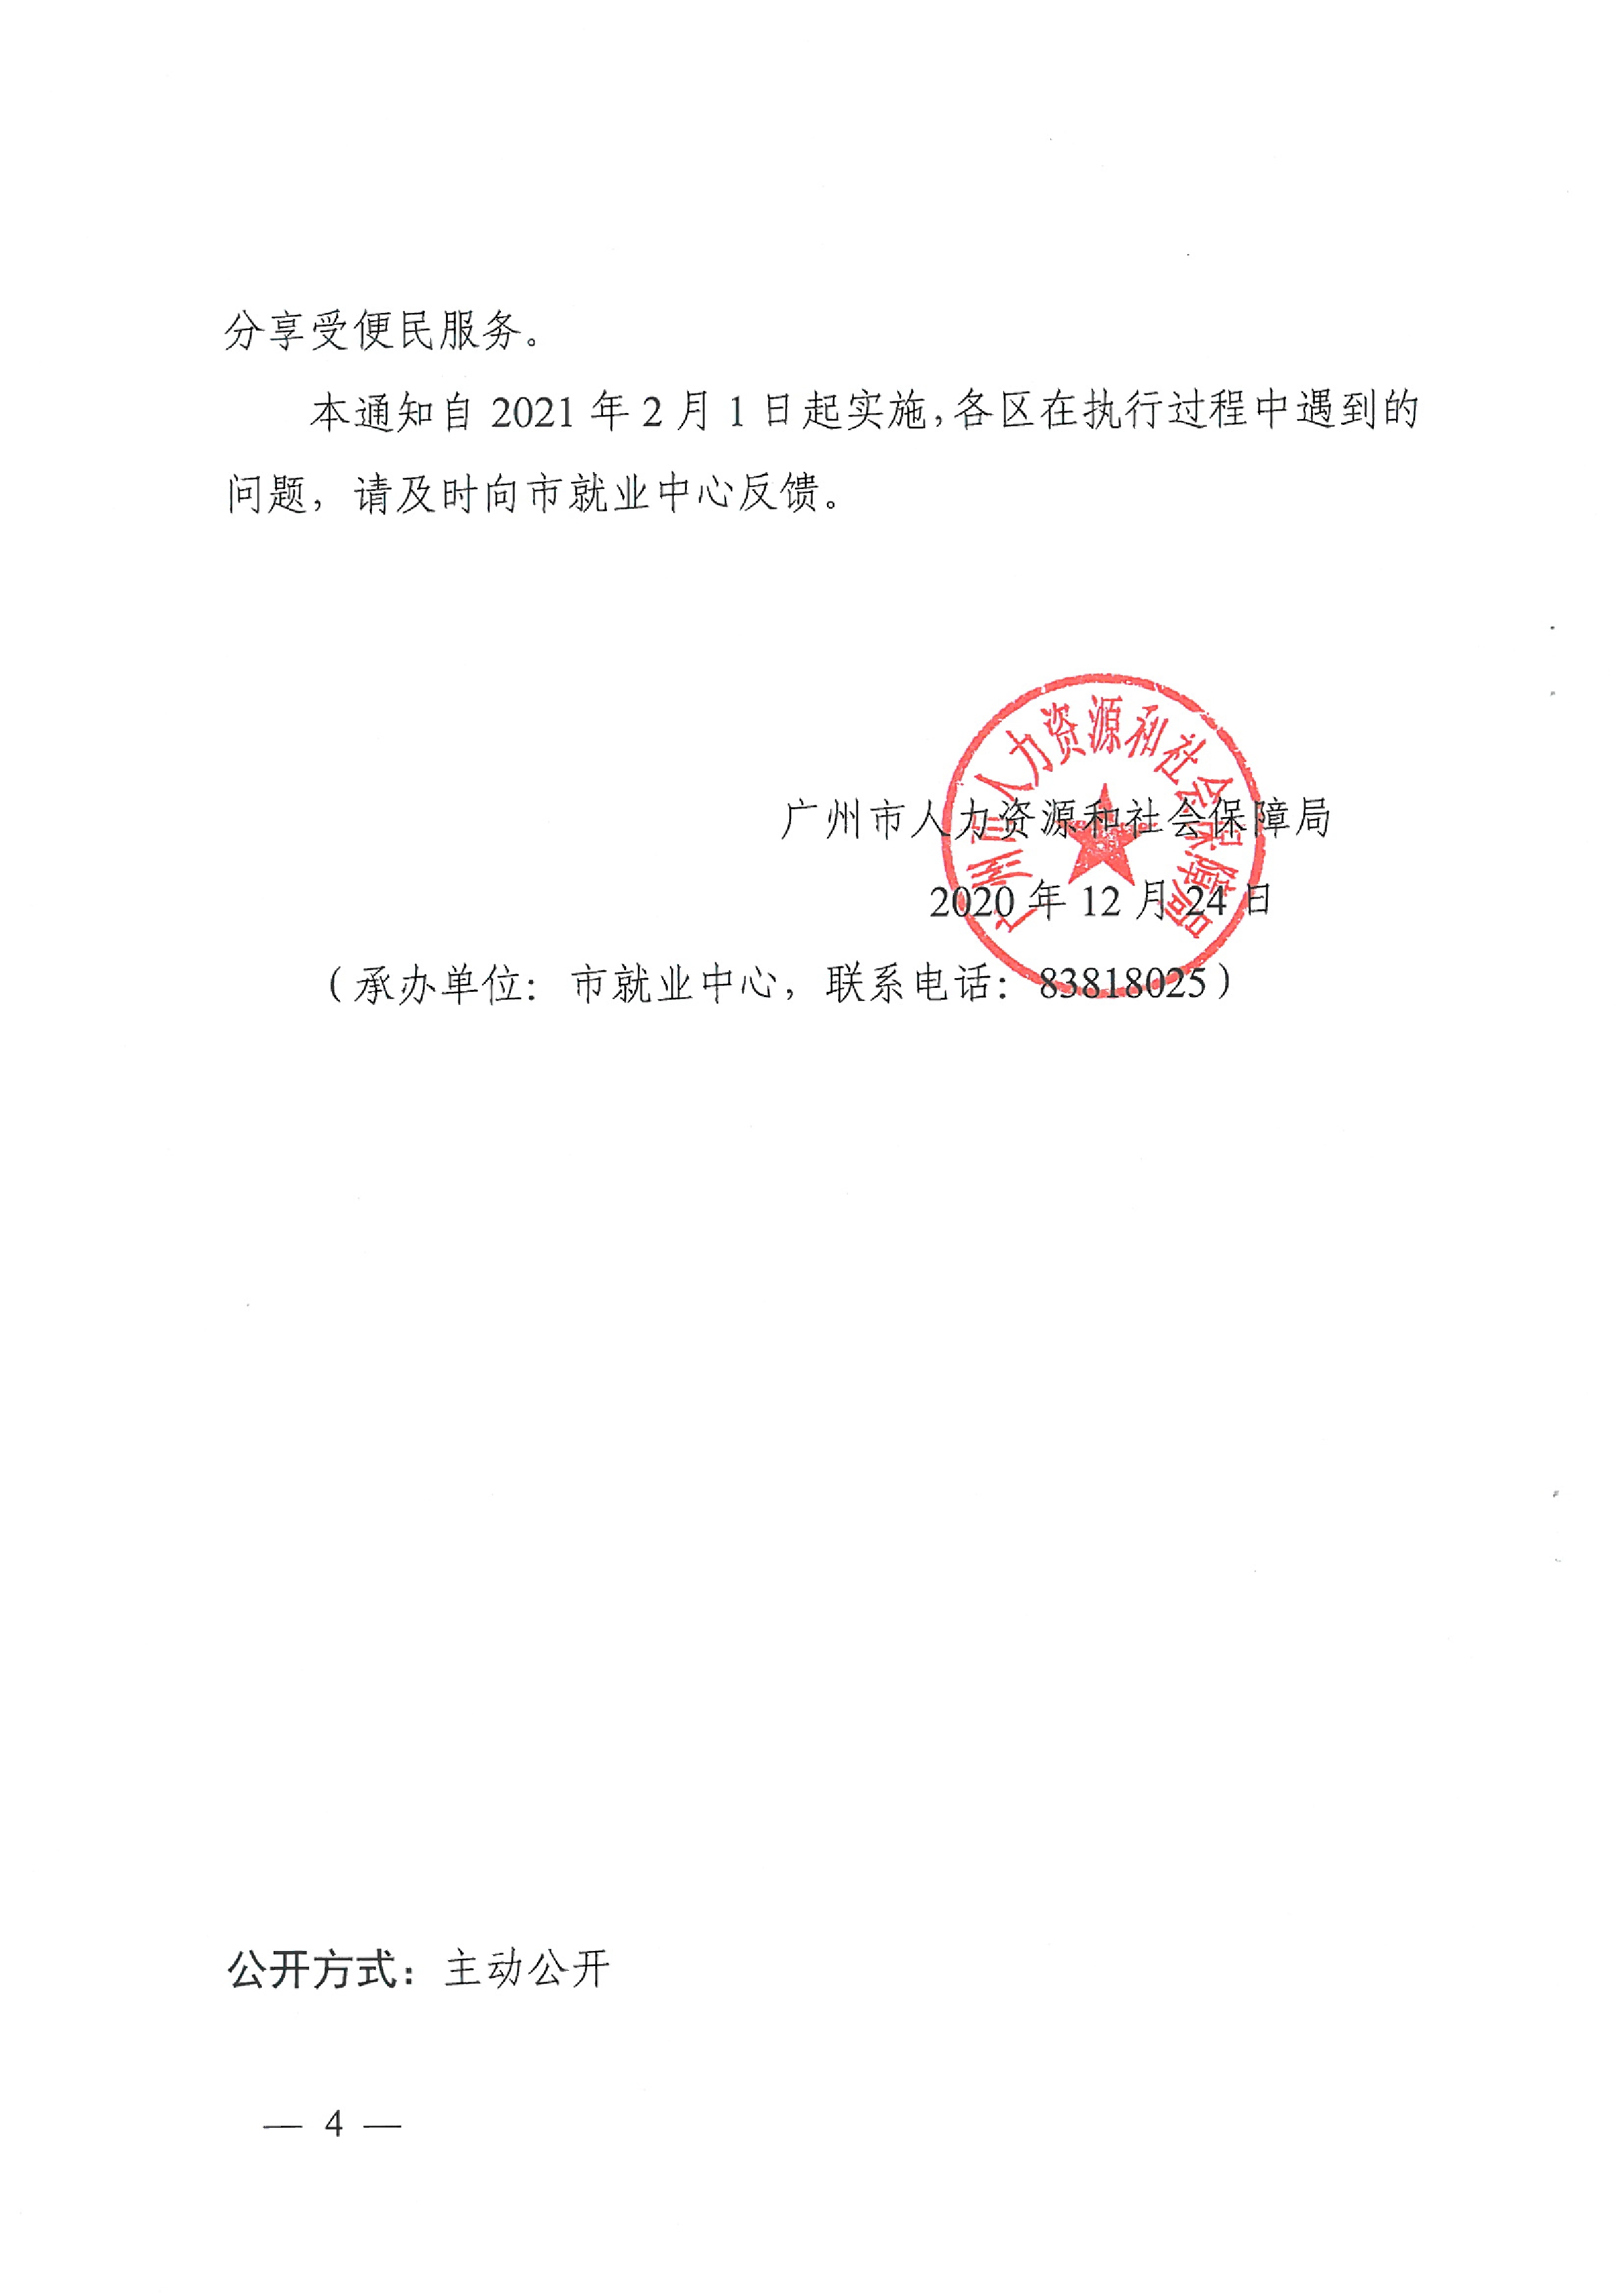 广州市人力资源和社会保障局关于统一做好就业登记和社会保险登记工作的通知（穗人社函〔2020〕750号）0003.jpg